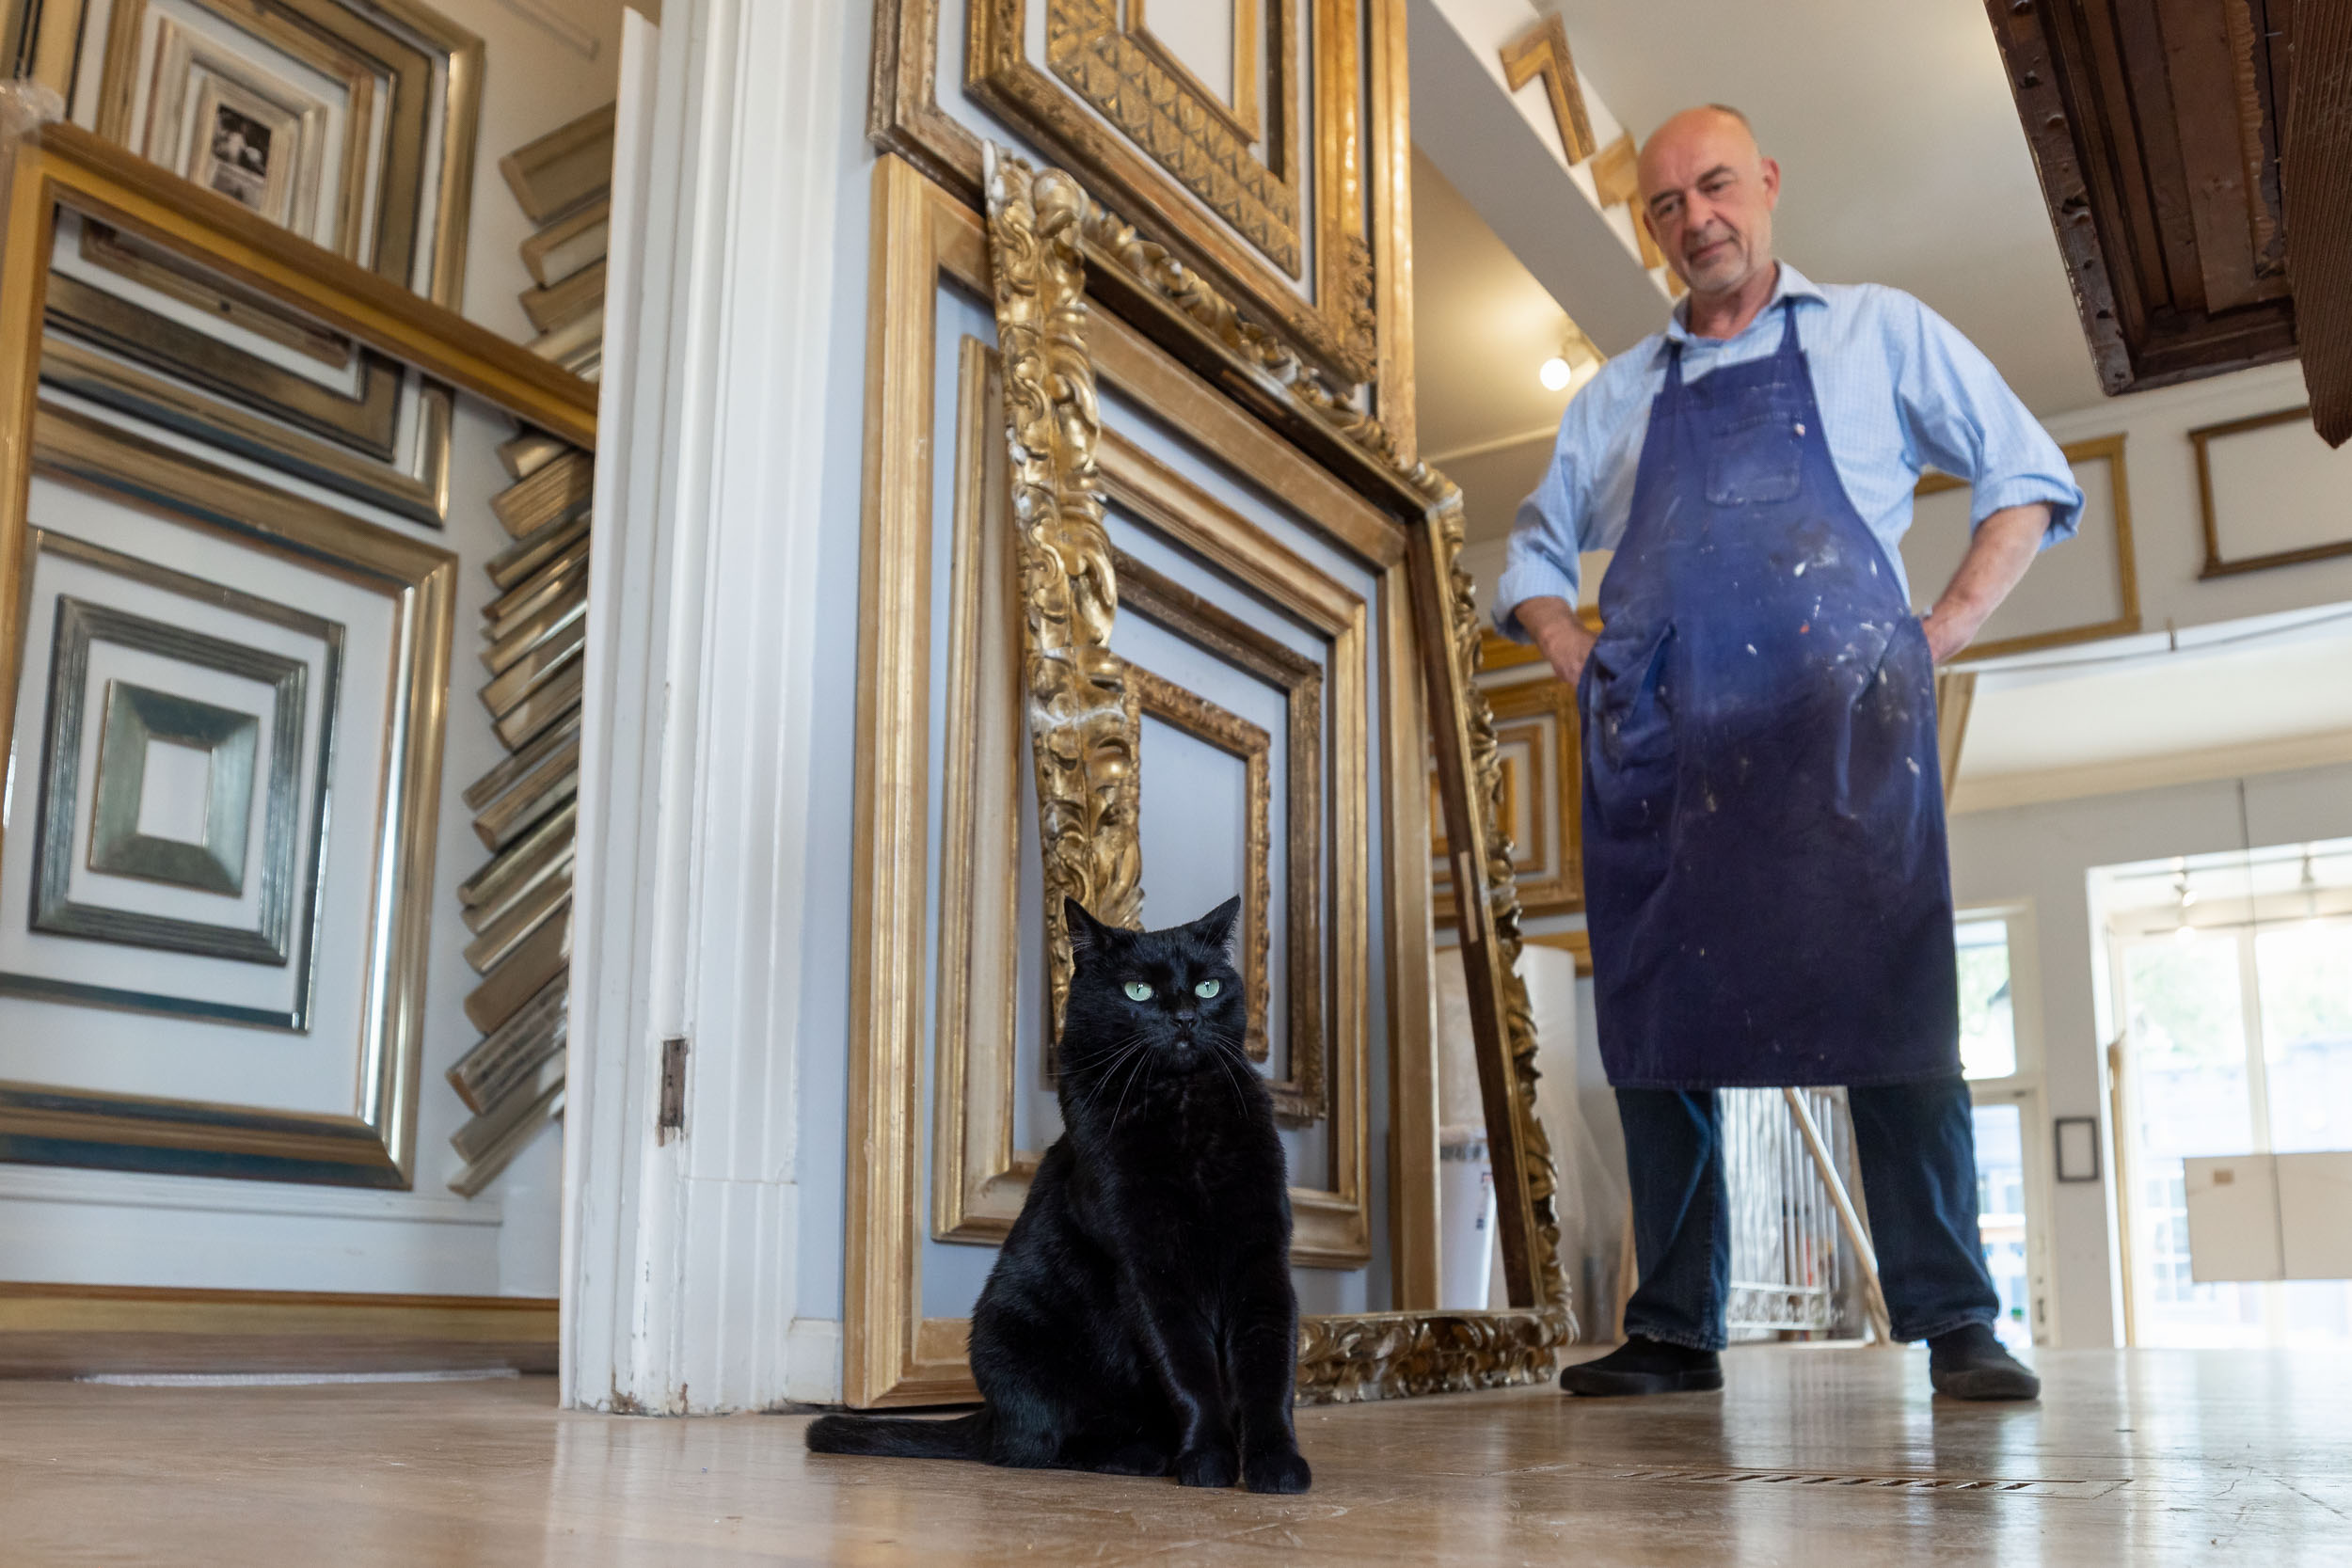 black-cat-in-san-francisco-frame-shop-with-owner-5854-Edit